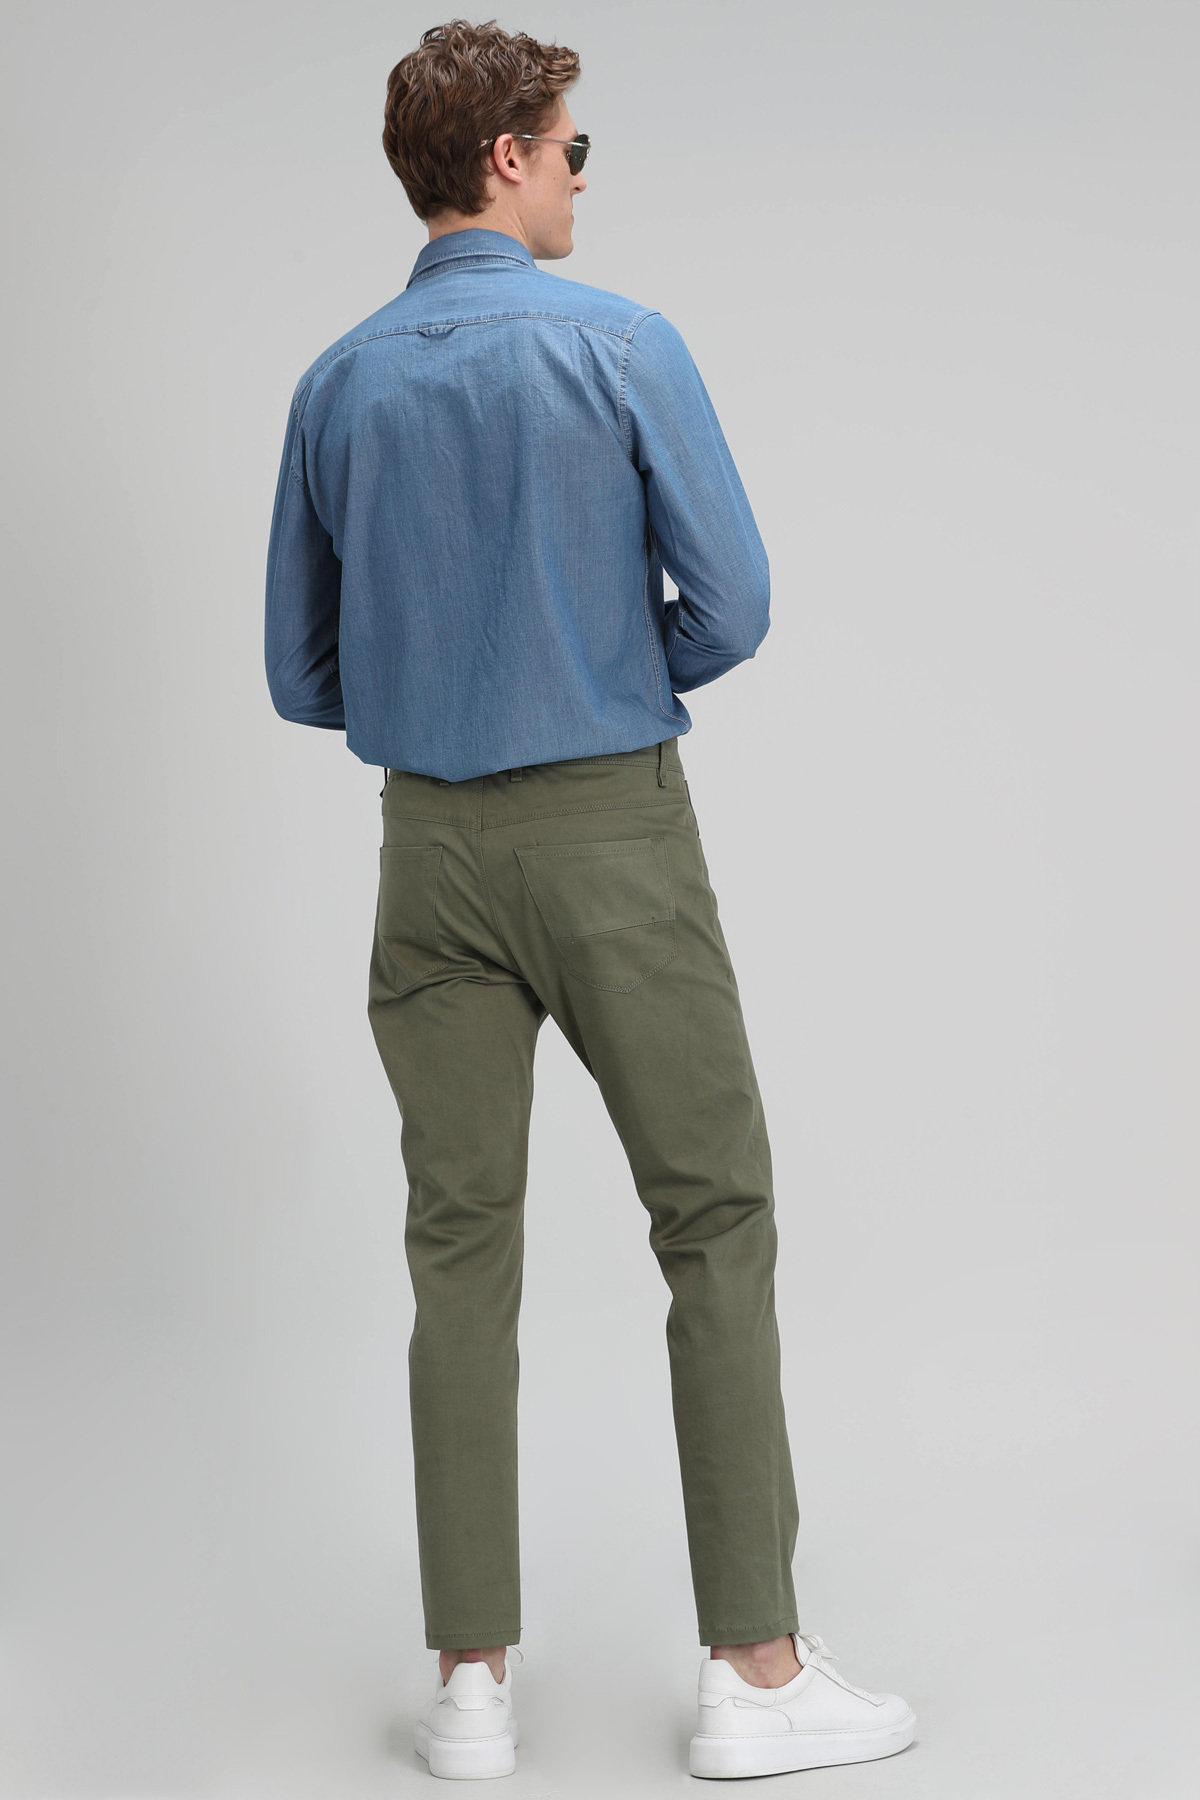 Marp Spor 5 Cep Erkek Pantolon Slim Fit Yeşil